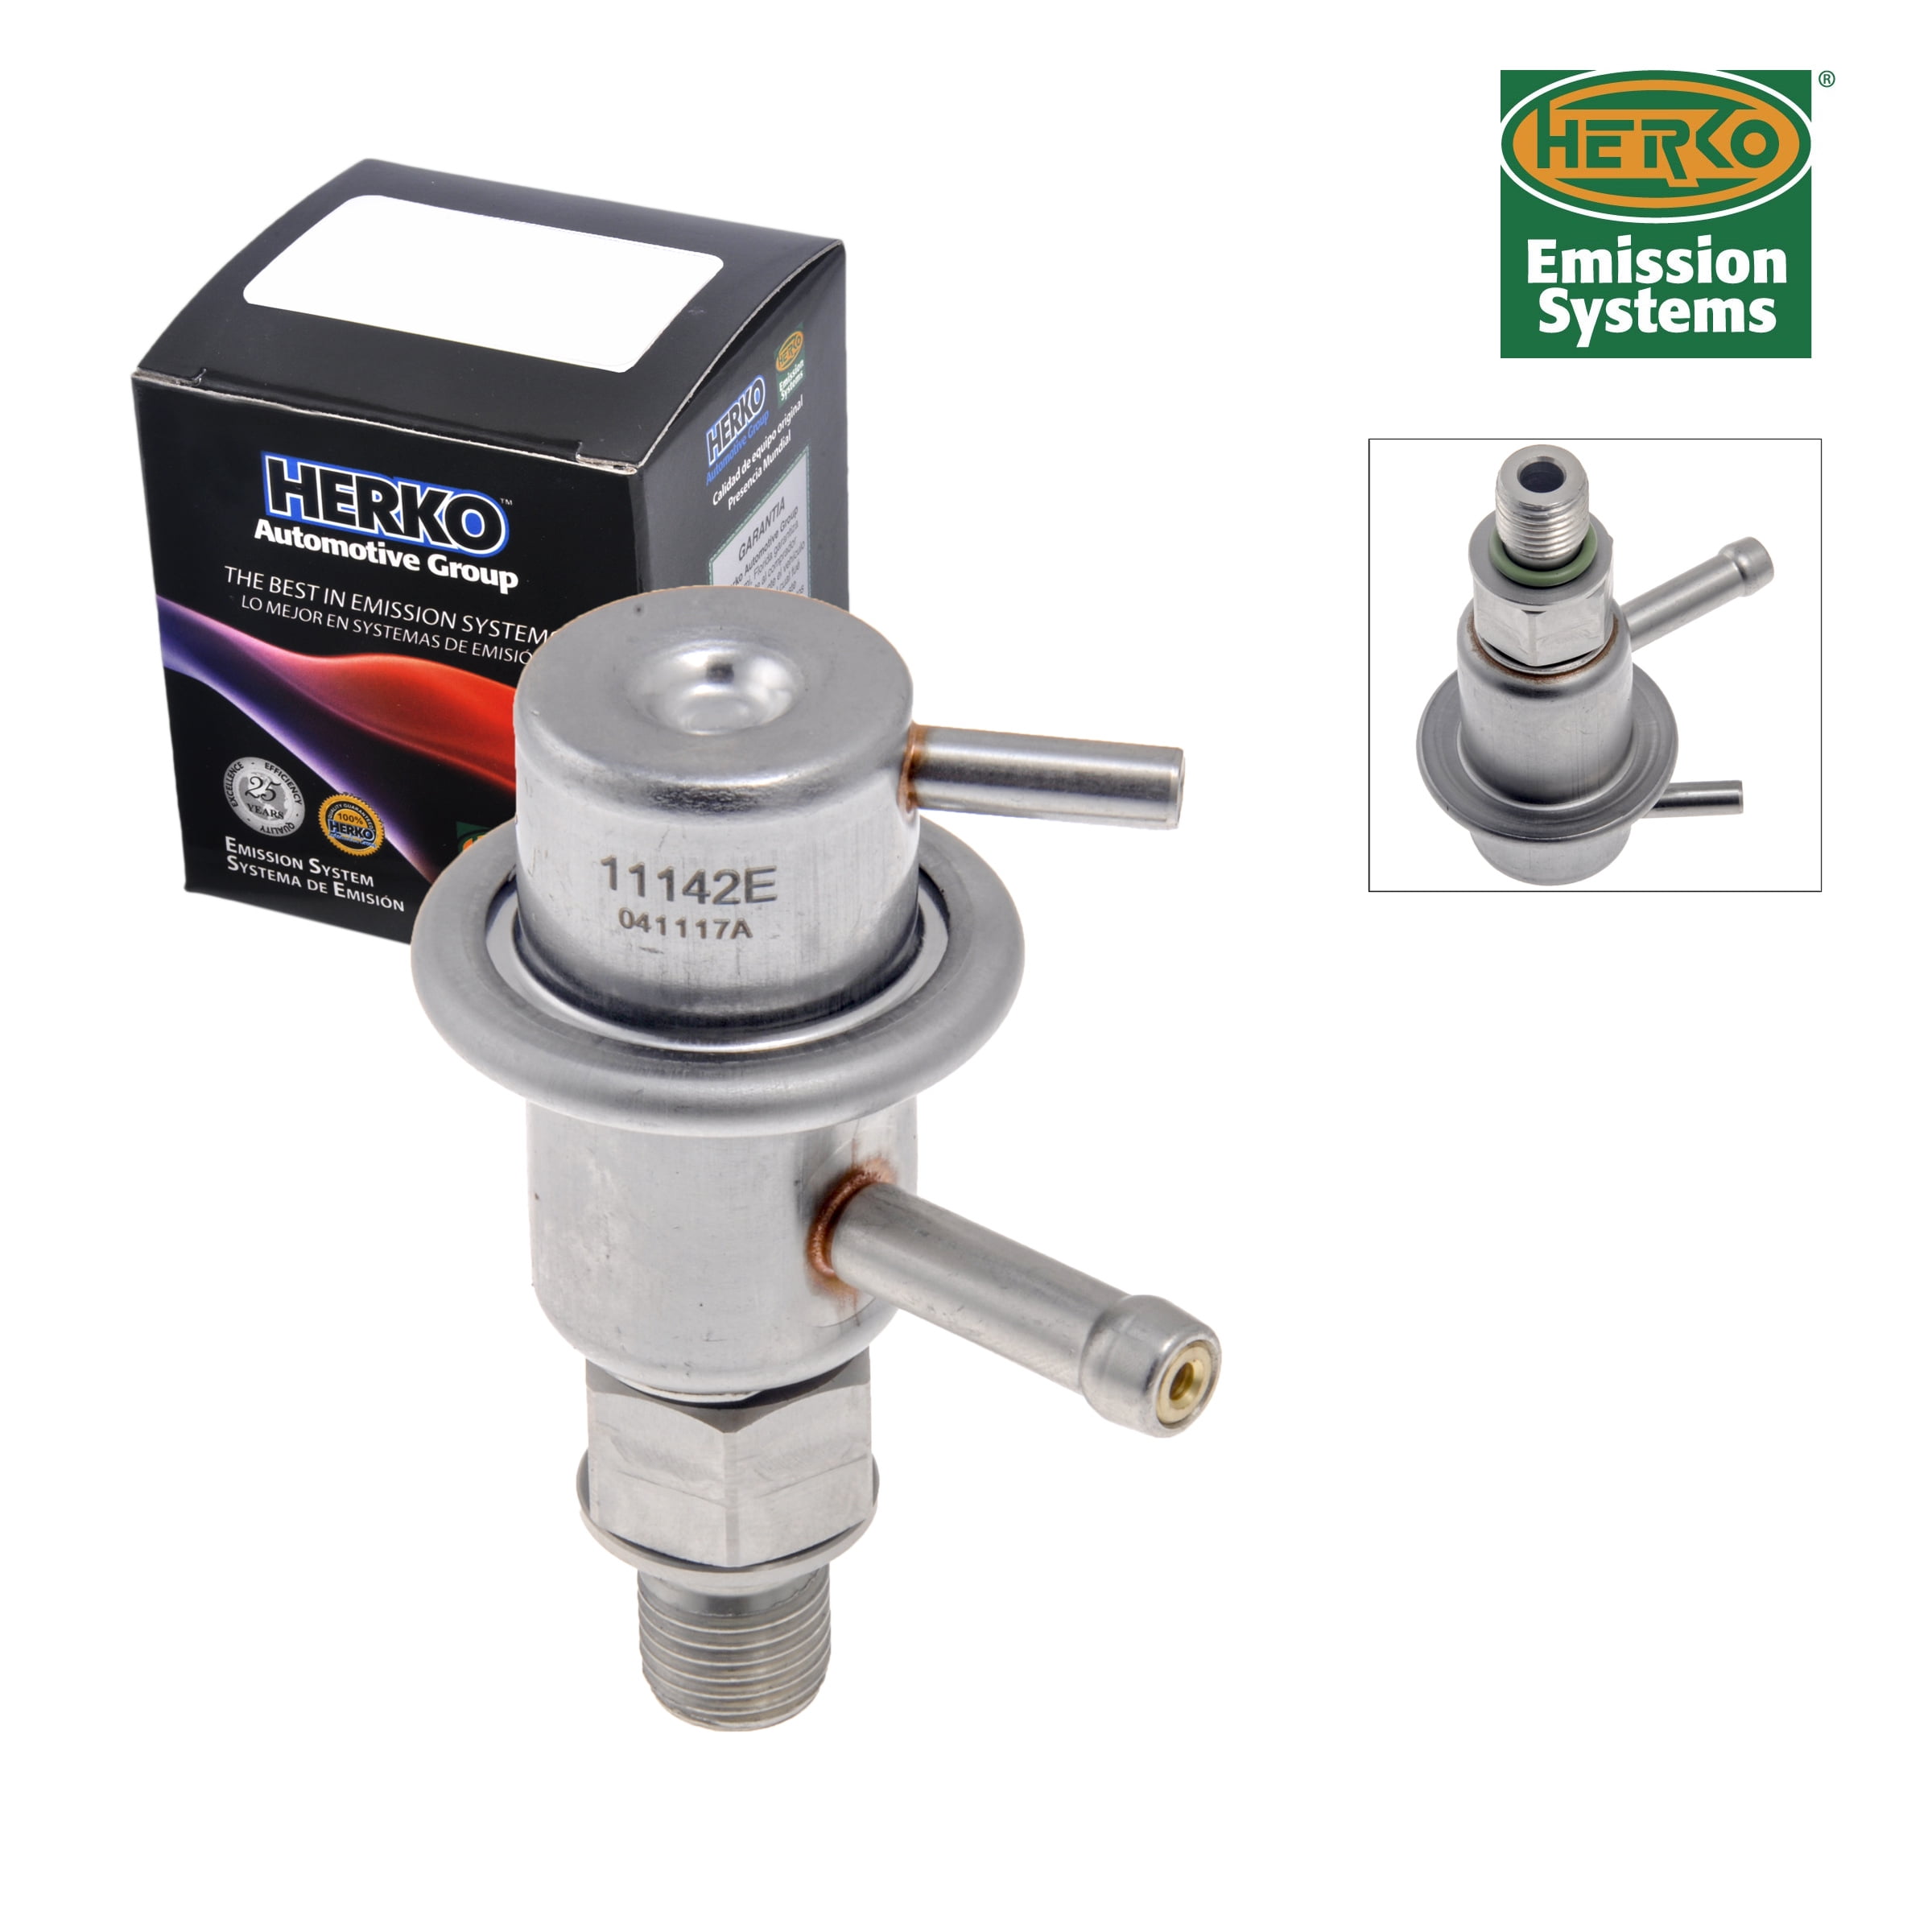 Beck Arnley 158-0750 Fuel Injection Manifold Pressure Sensor BEC158-0750